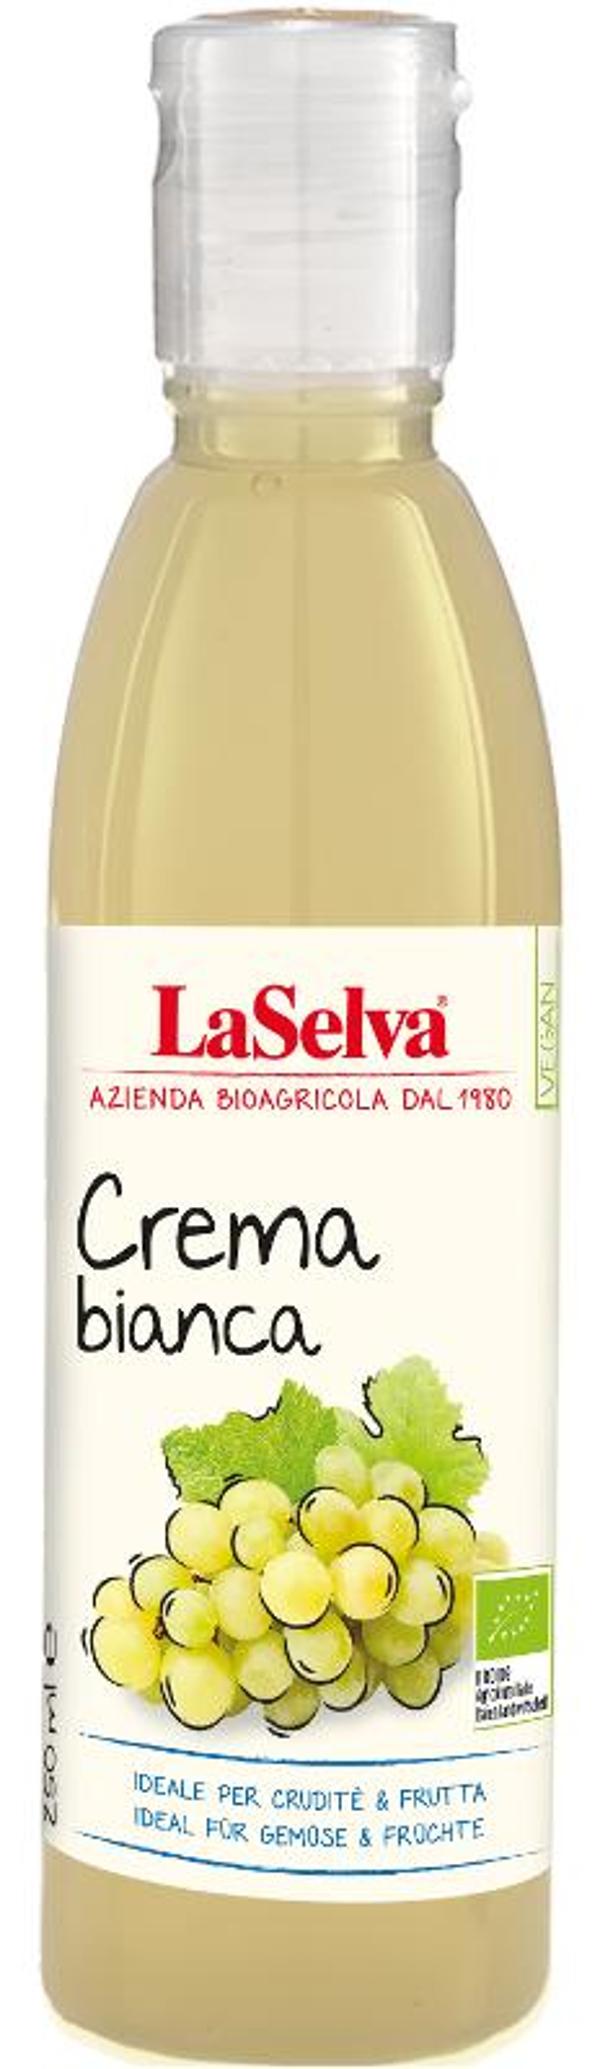 Produktfoto zu Crema di Balsamico bianco 0,25 l LaSelva